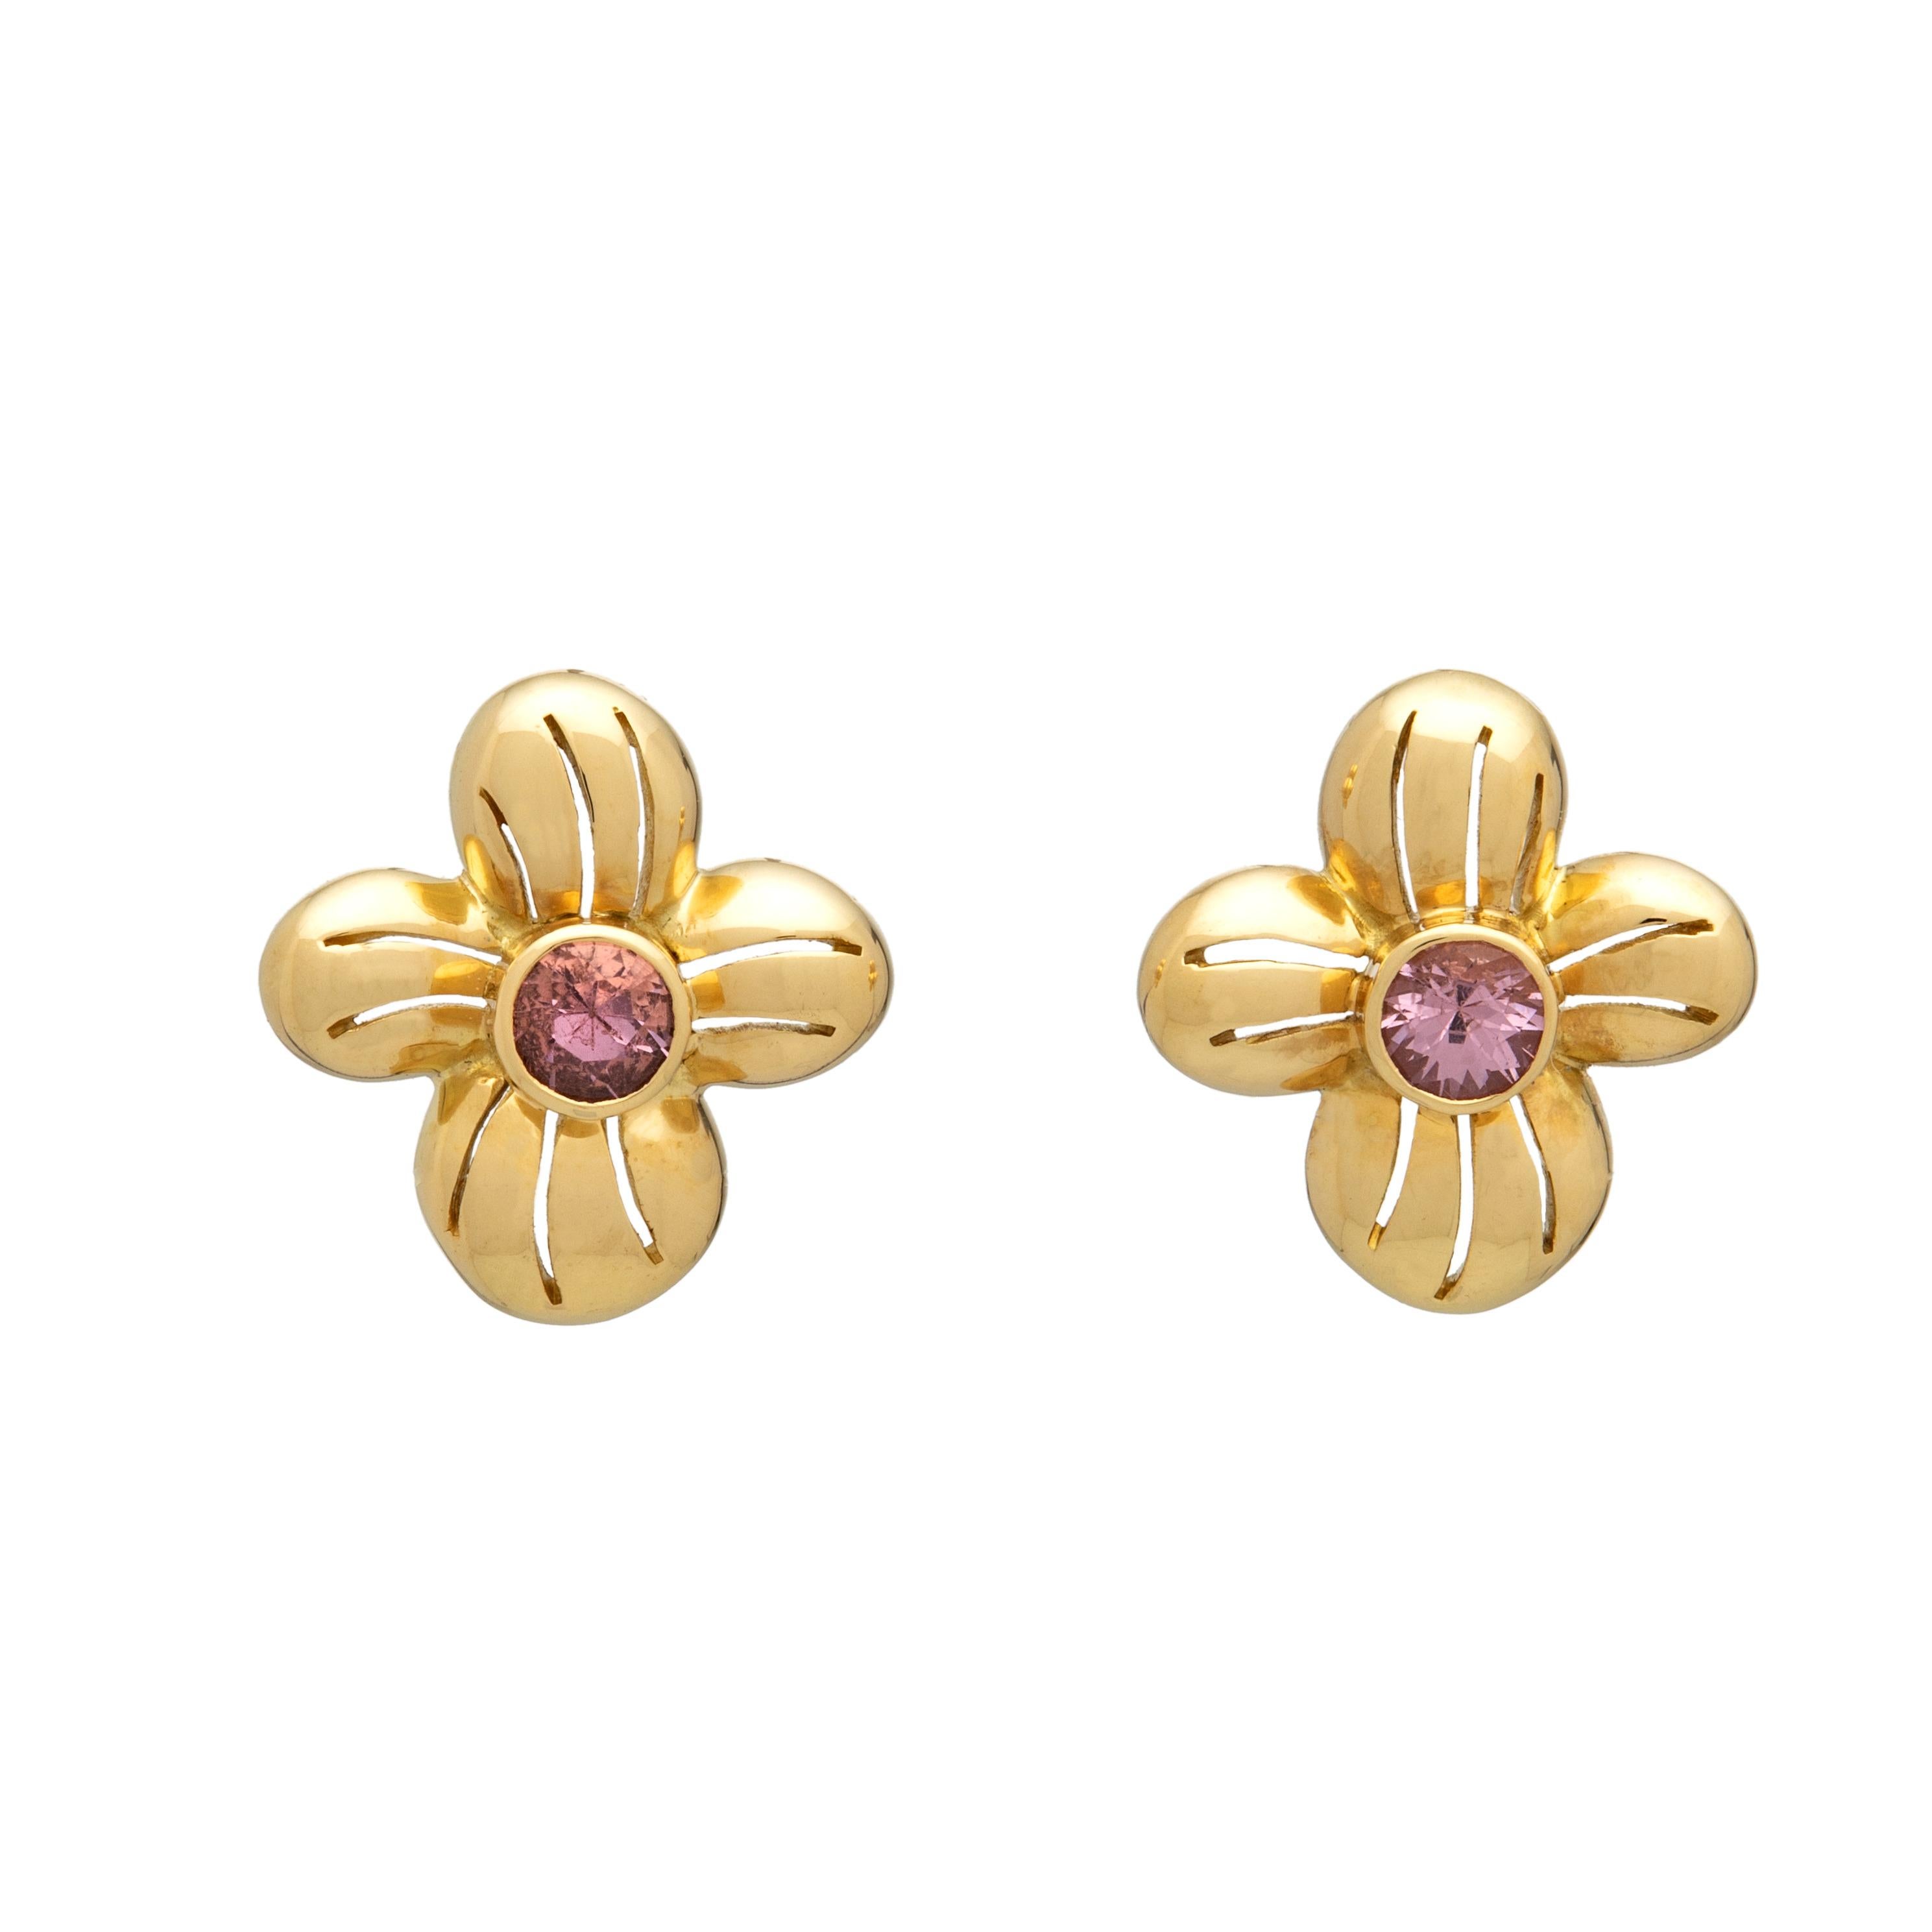 Diese Ohrringe aus 18-karätigem Gelbgold sind in Form von Blumen mit durchbrochenen Blütenblättern und einer hochglanzpolierten Oberfläche gefertigt. Die beiden hellrosa Spinelle, die in den Blütenstempeln eingefasst sind, verleihen den Ohrringen